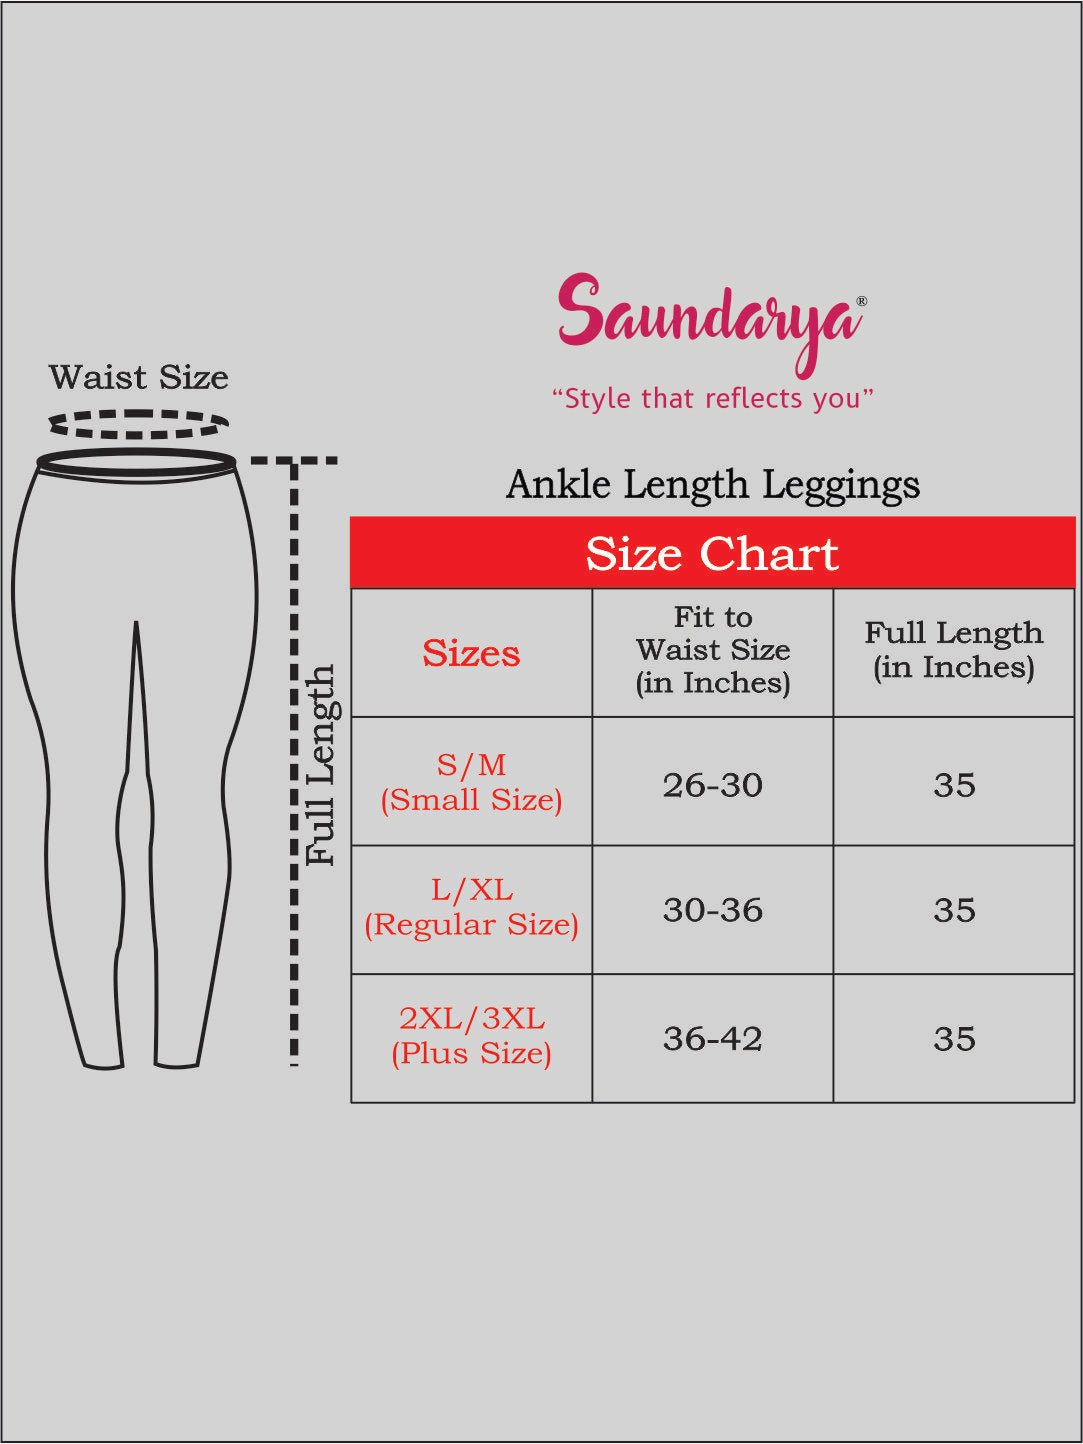 Saundarya Women's Beige Ankle Length Leggings Cotton